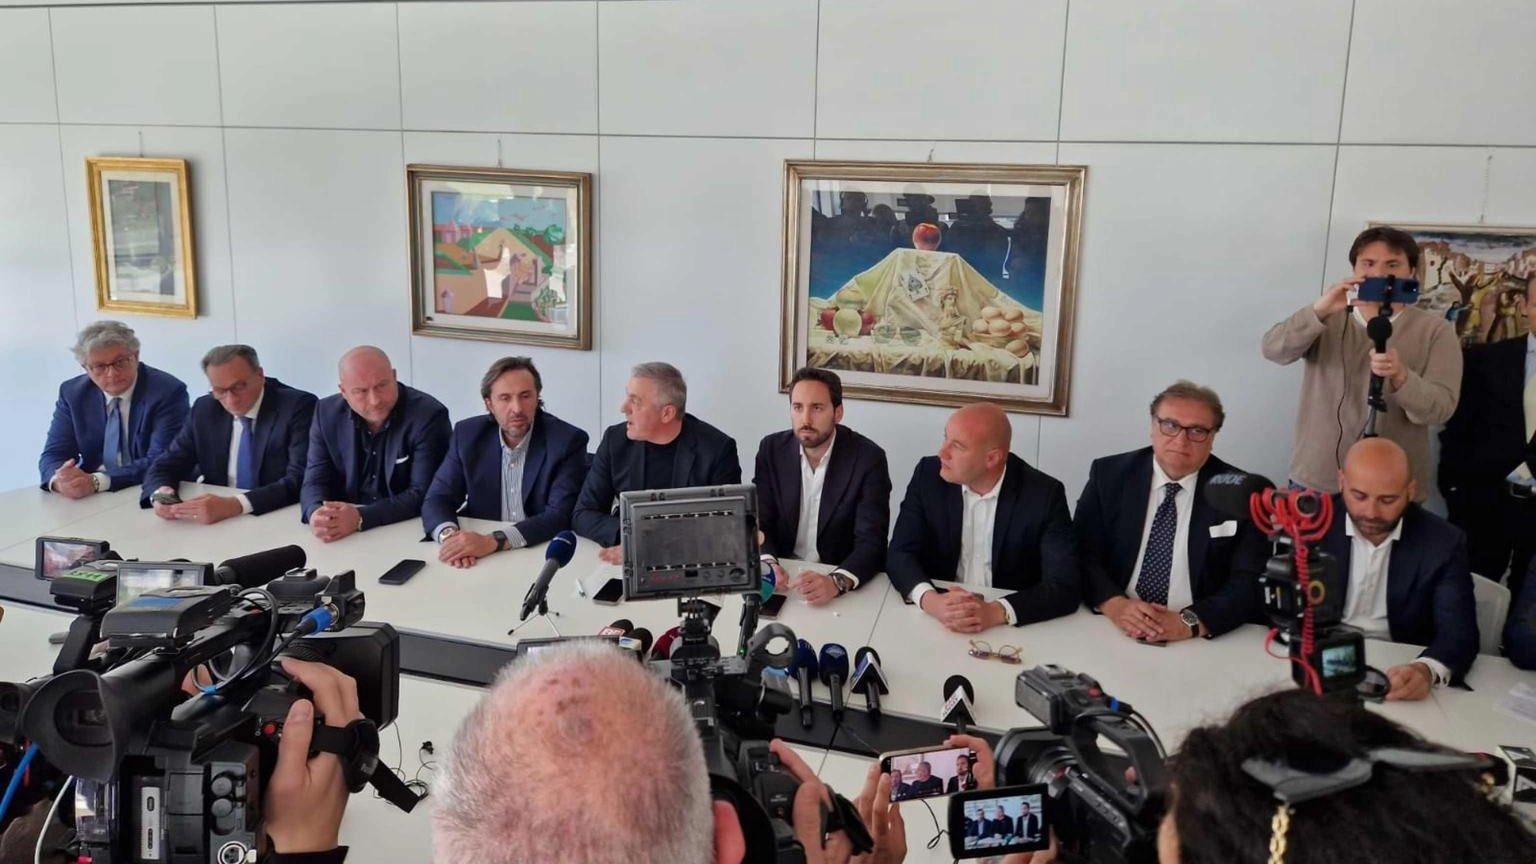 Centrodestra Puglia annuncia mozione sfiducia su Emiliano